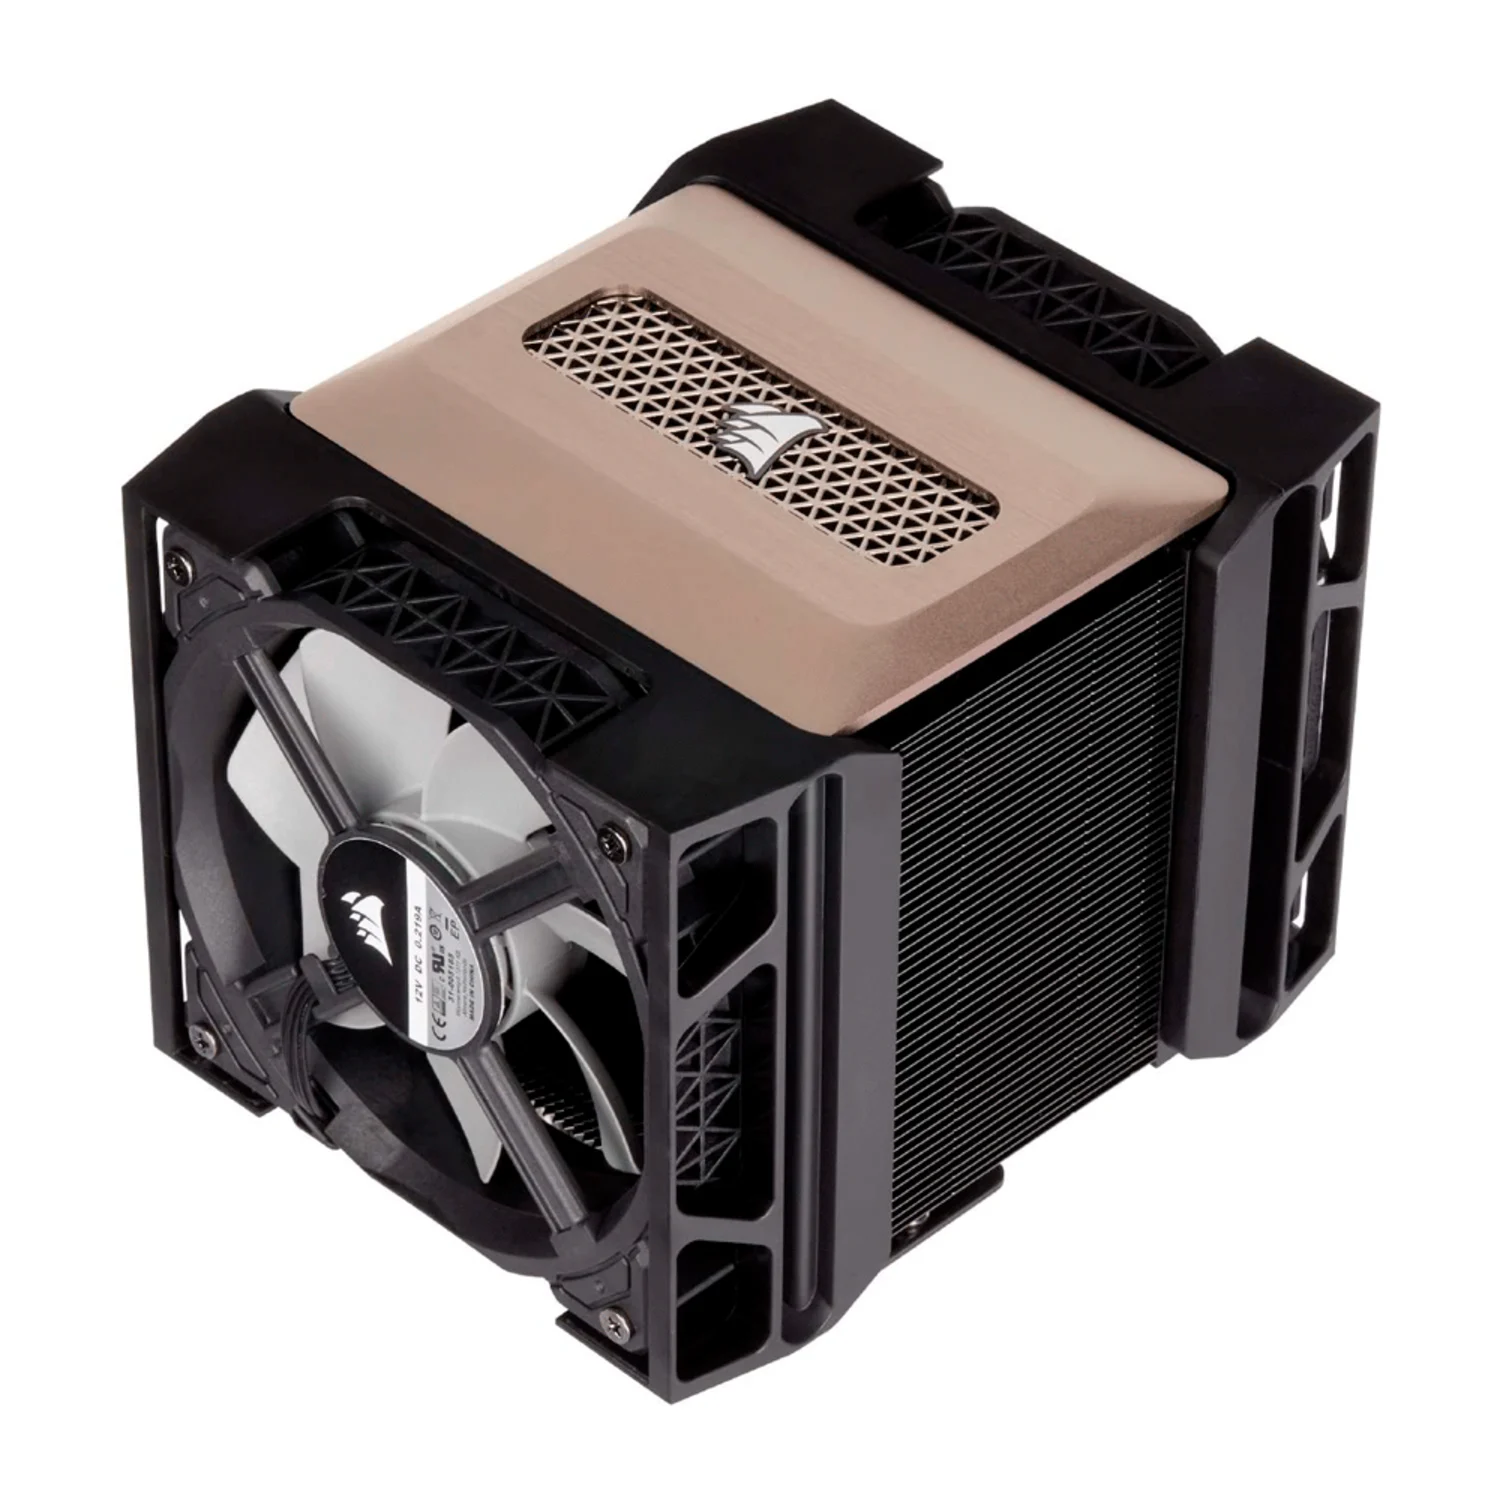 Cooler para Processador Corsair A500 CT-9010003-WW Dual Fan - Preto (Caixa Danificada)